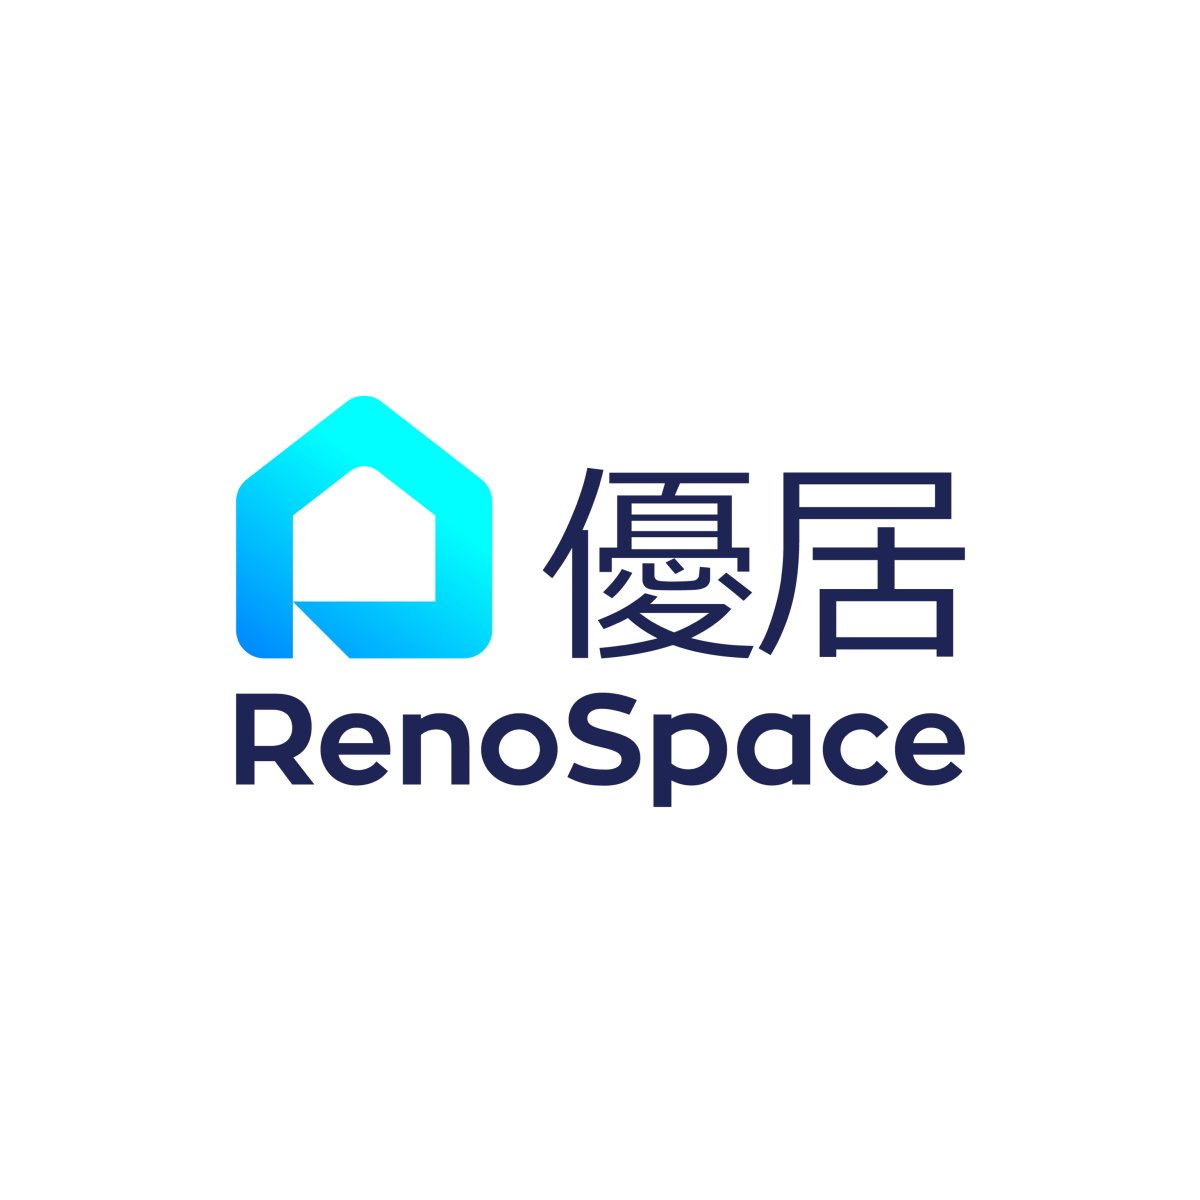 Renospace